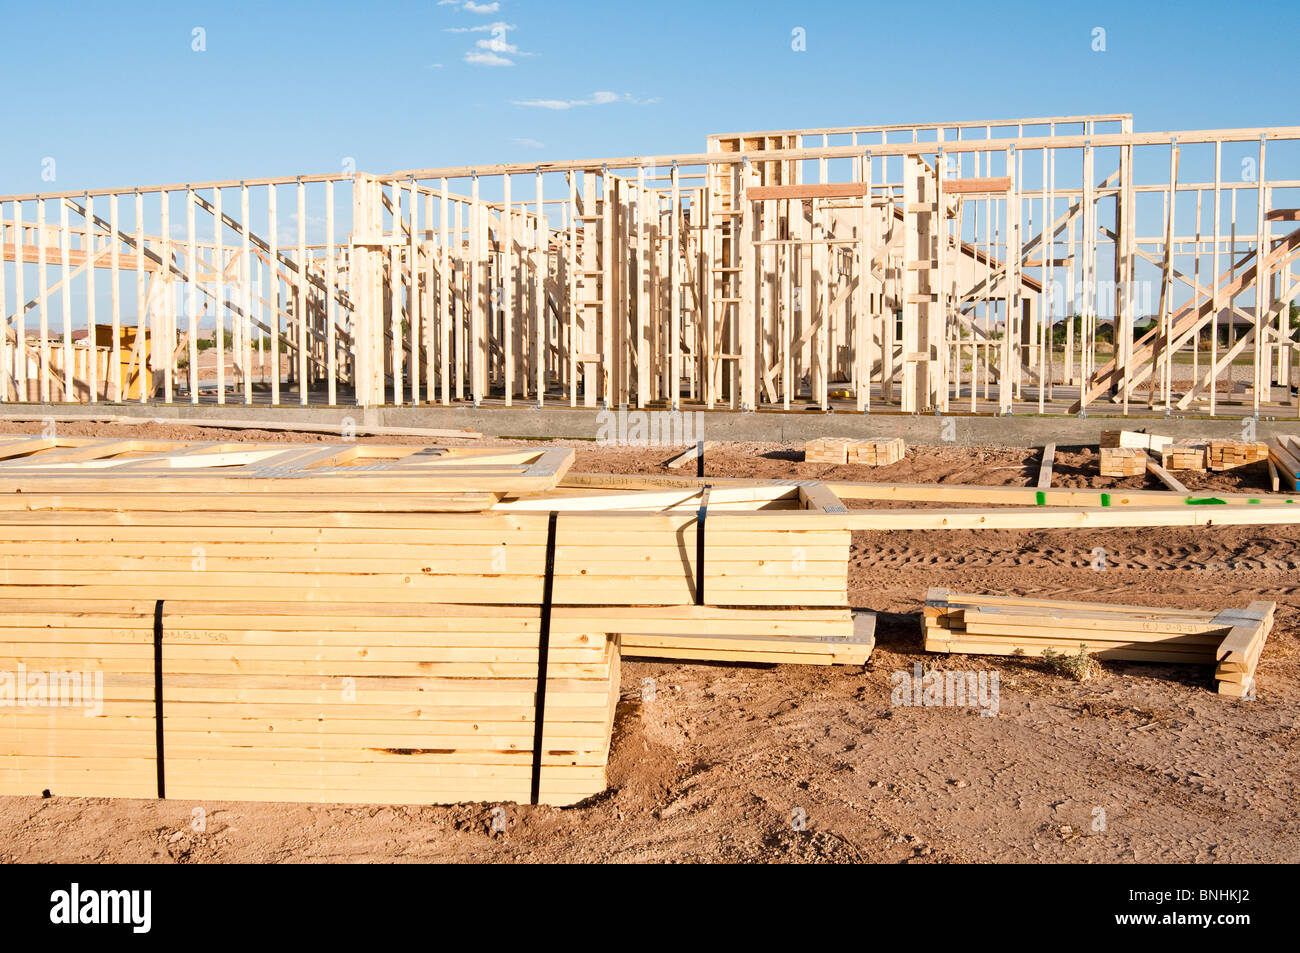 Los materiales de construcción están apilados en el sitio de construcción de una nueva casa de madera construida en Arizona. Foto de stock